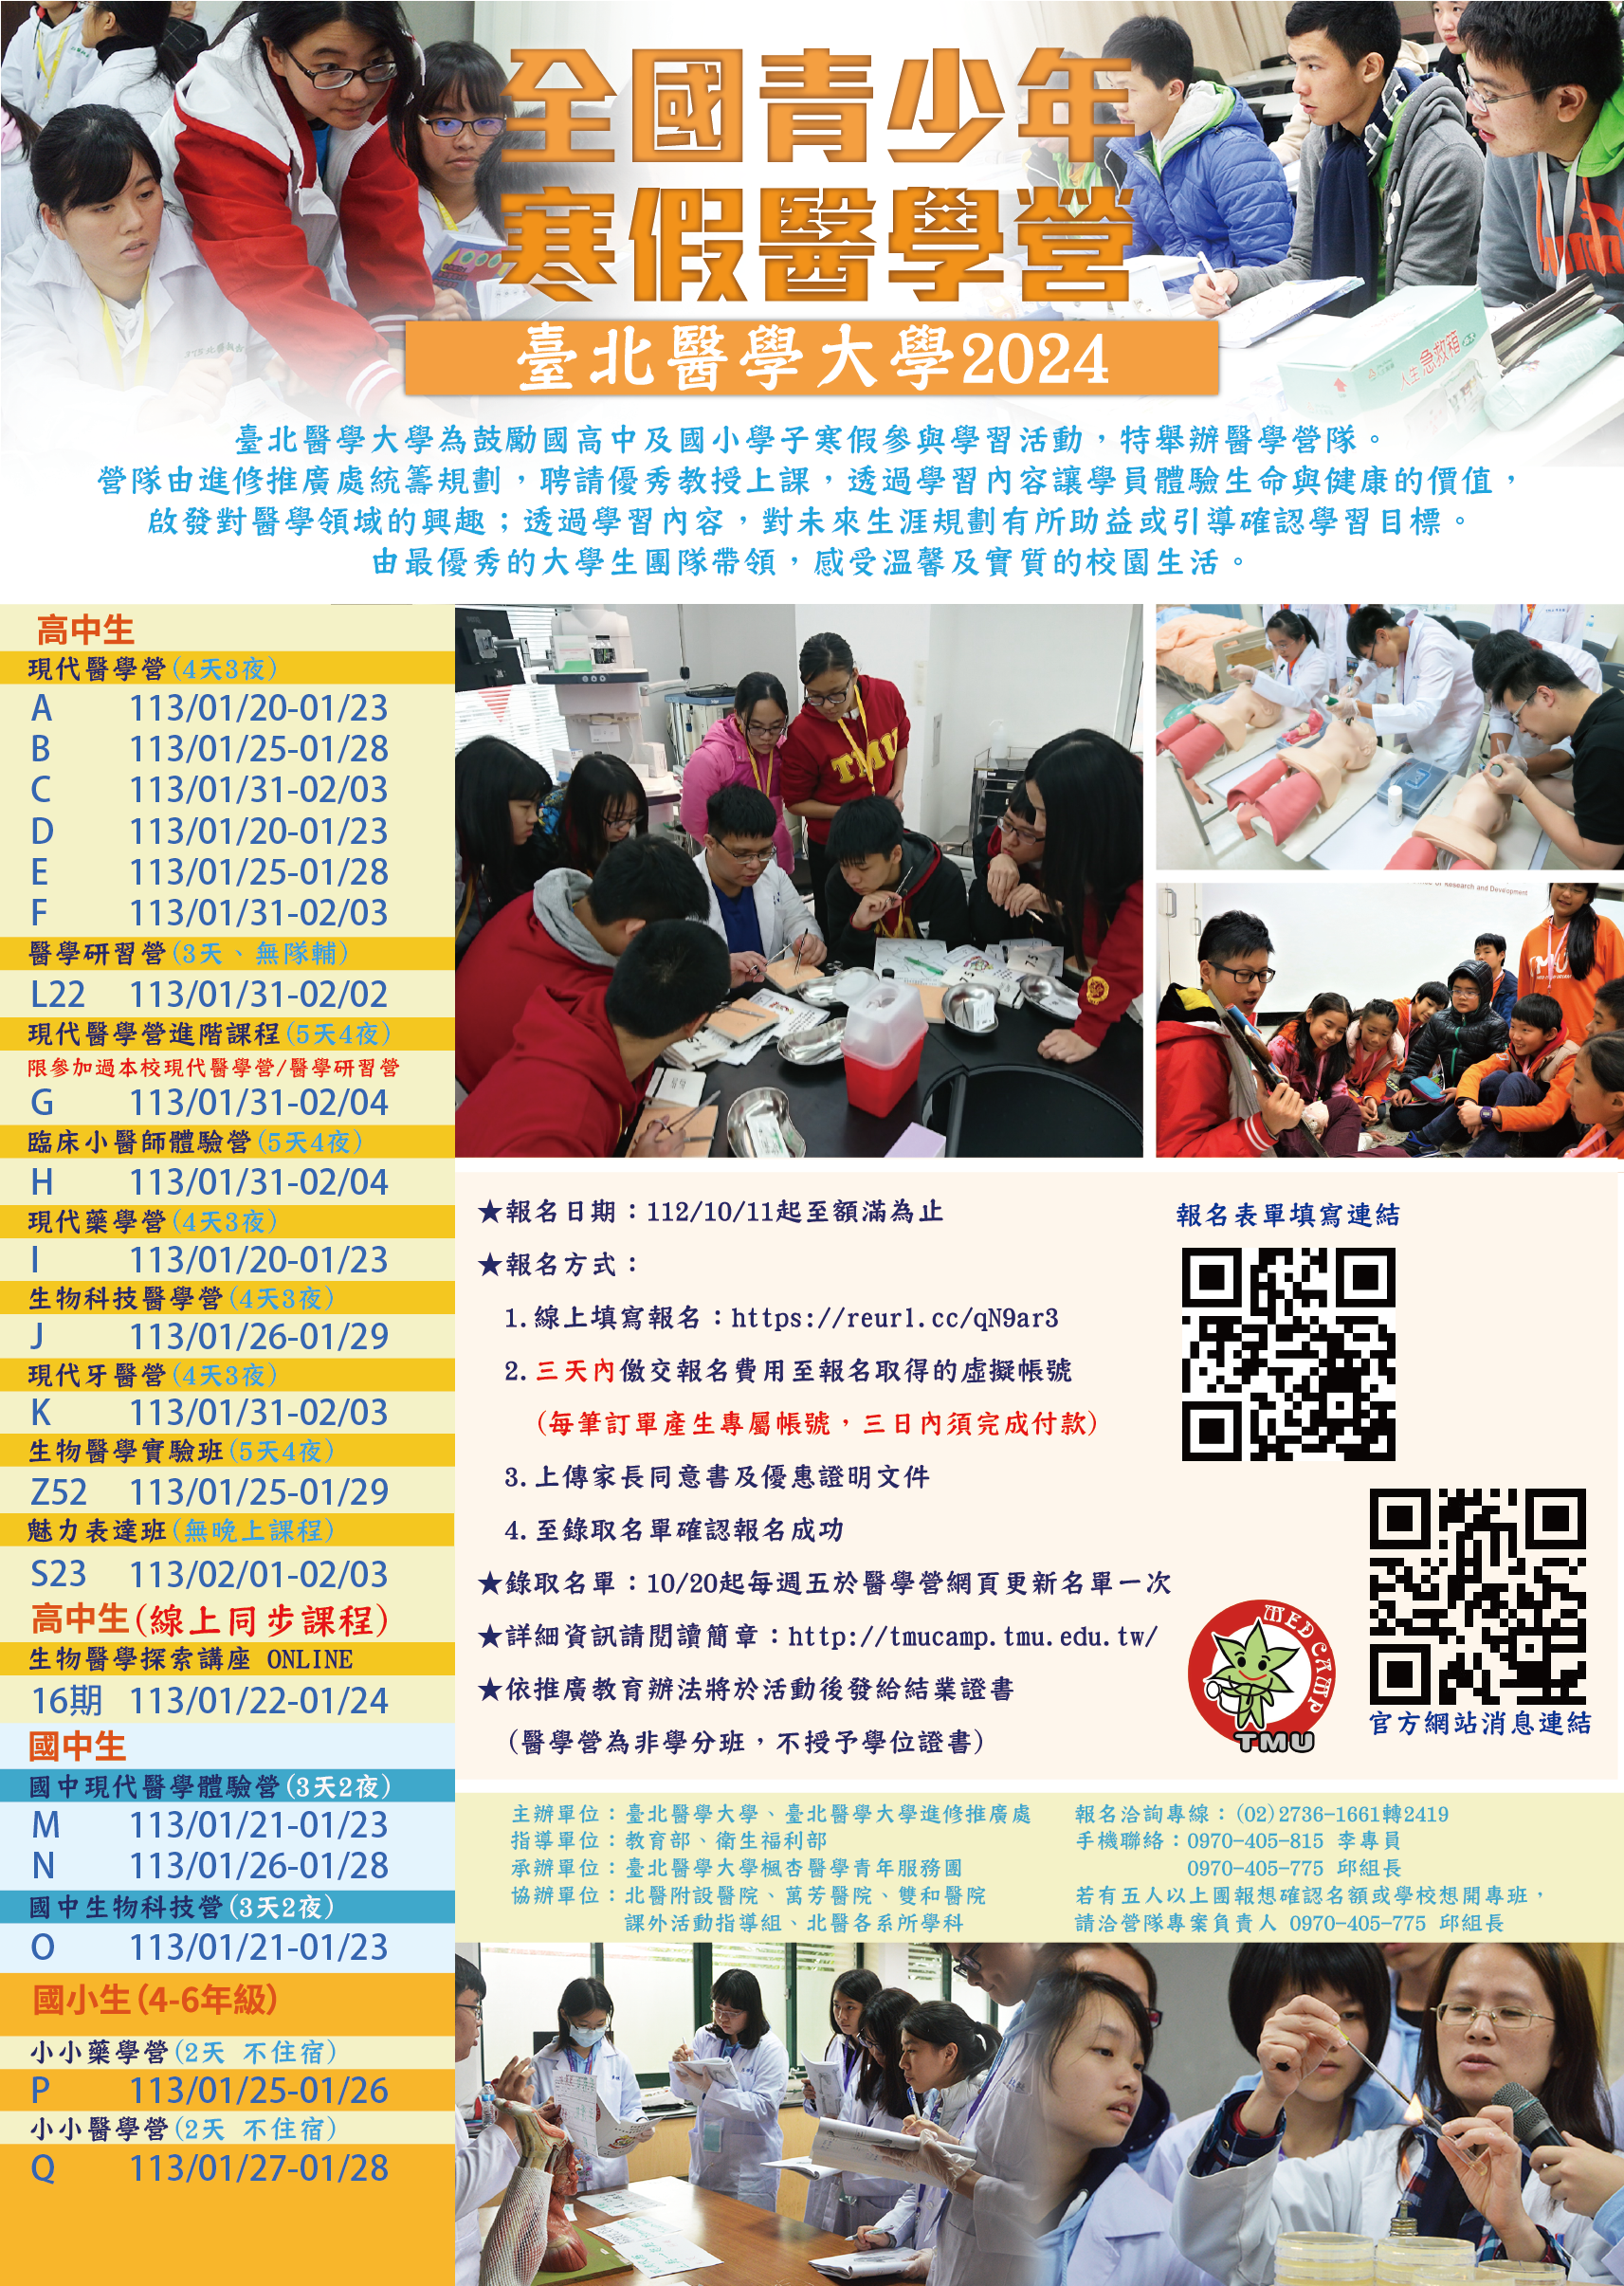 臺北醫學大學 2024 全國青少年寒假醫學營活動報名開始